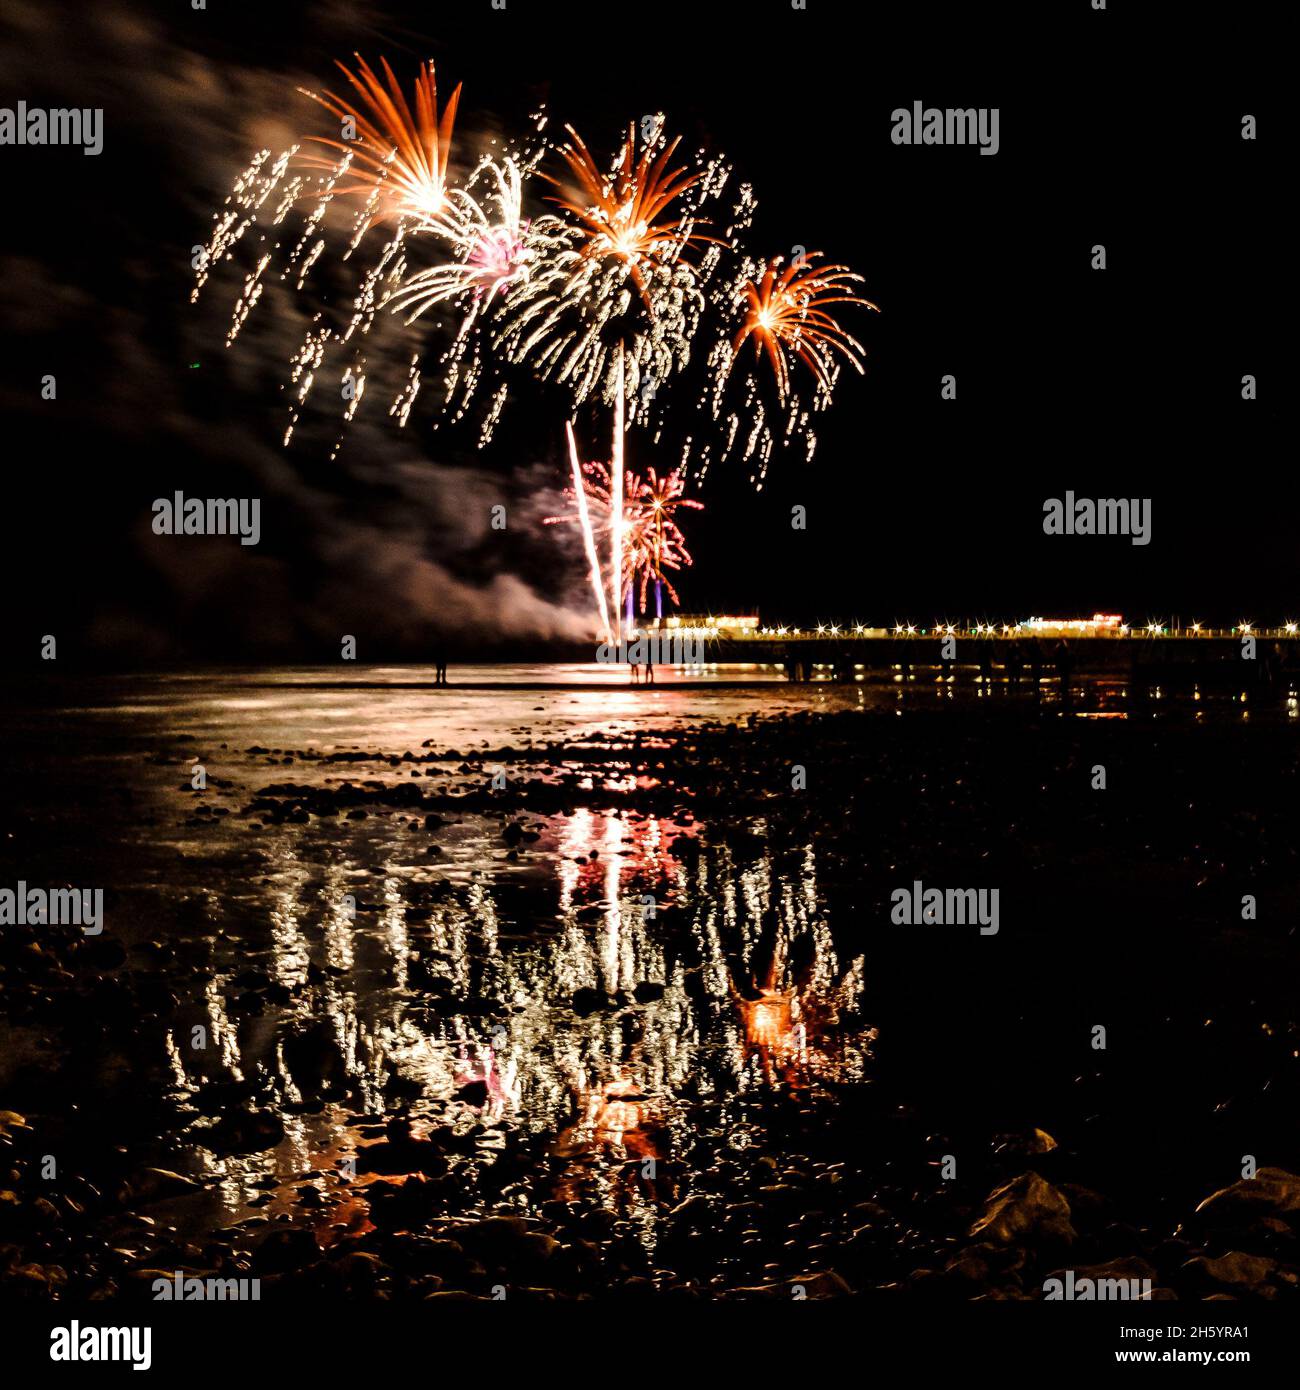 East Beach, Worthing, Reino Unido. 5 de noviembre de 2021. Los fuegos artificiales se encuentran en Worthing Pier y se reflejan en la marea entrante Worthing Lions Fireworks. . Foto de Julie Edwards./Alamy Live News Foto de stock